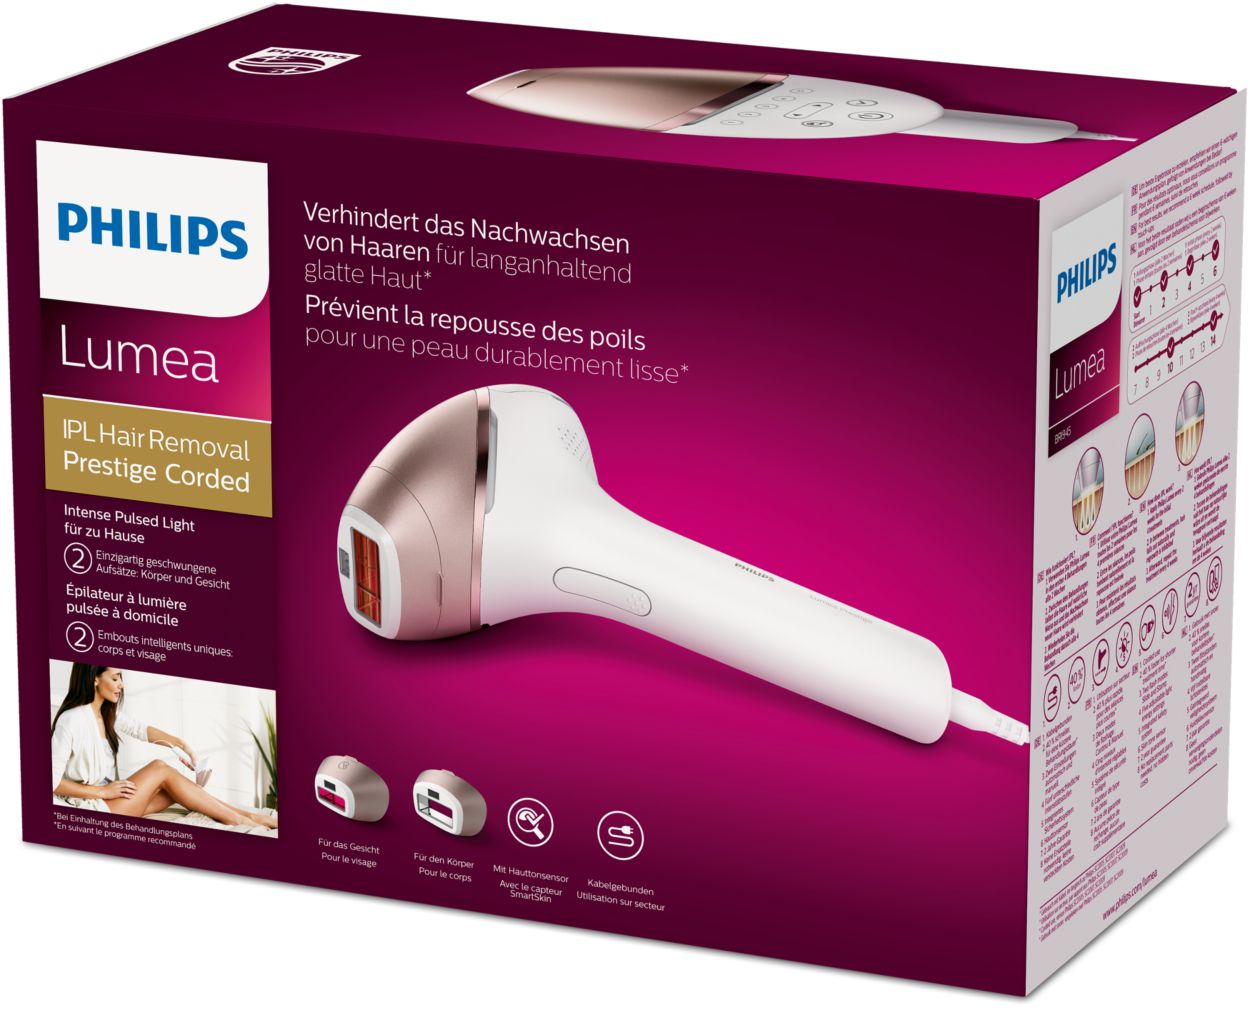 La depiladora de luz pulsada Philips que elimina el vello en tres sesiones  - Showroom